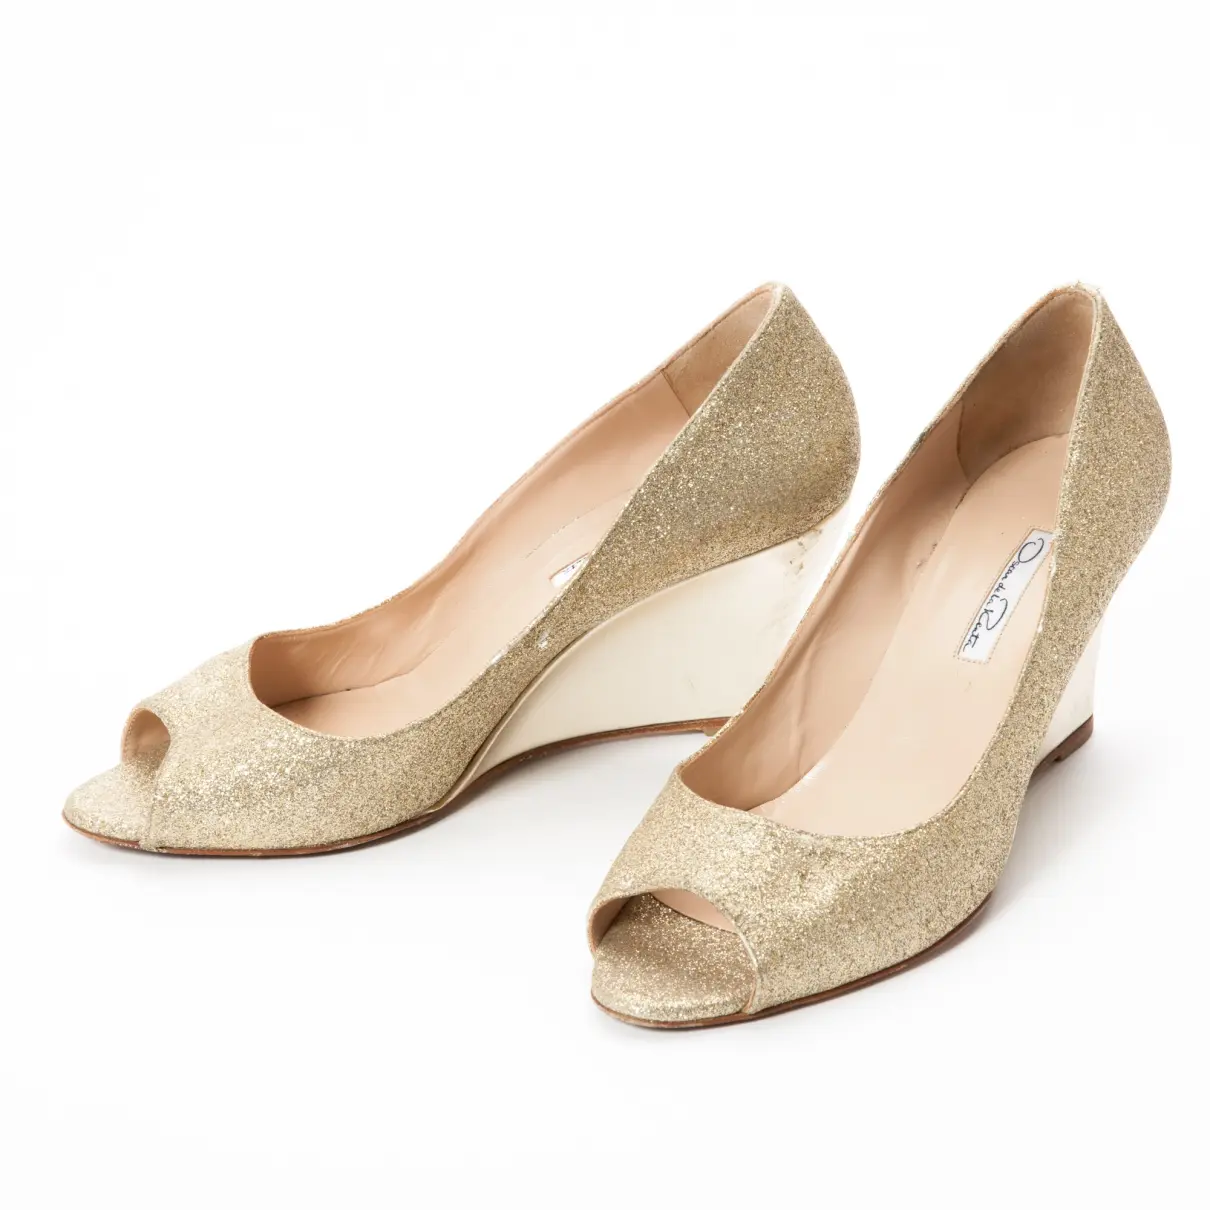 Oscar De La Renta Glitter heels for sale